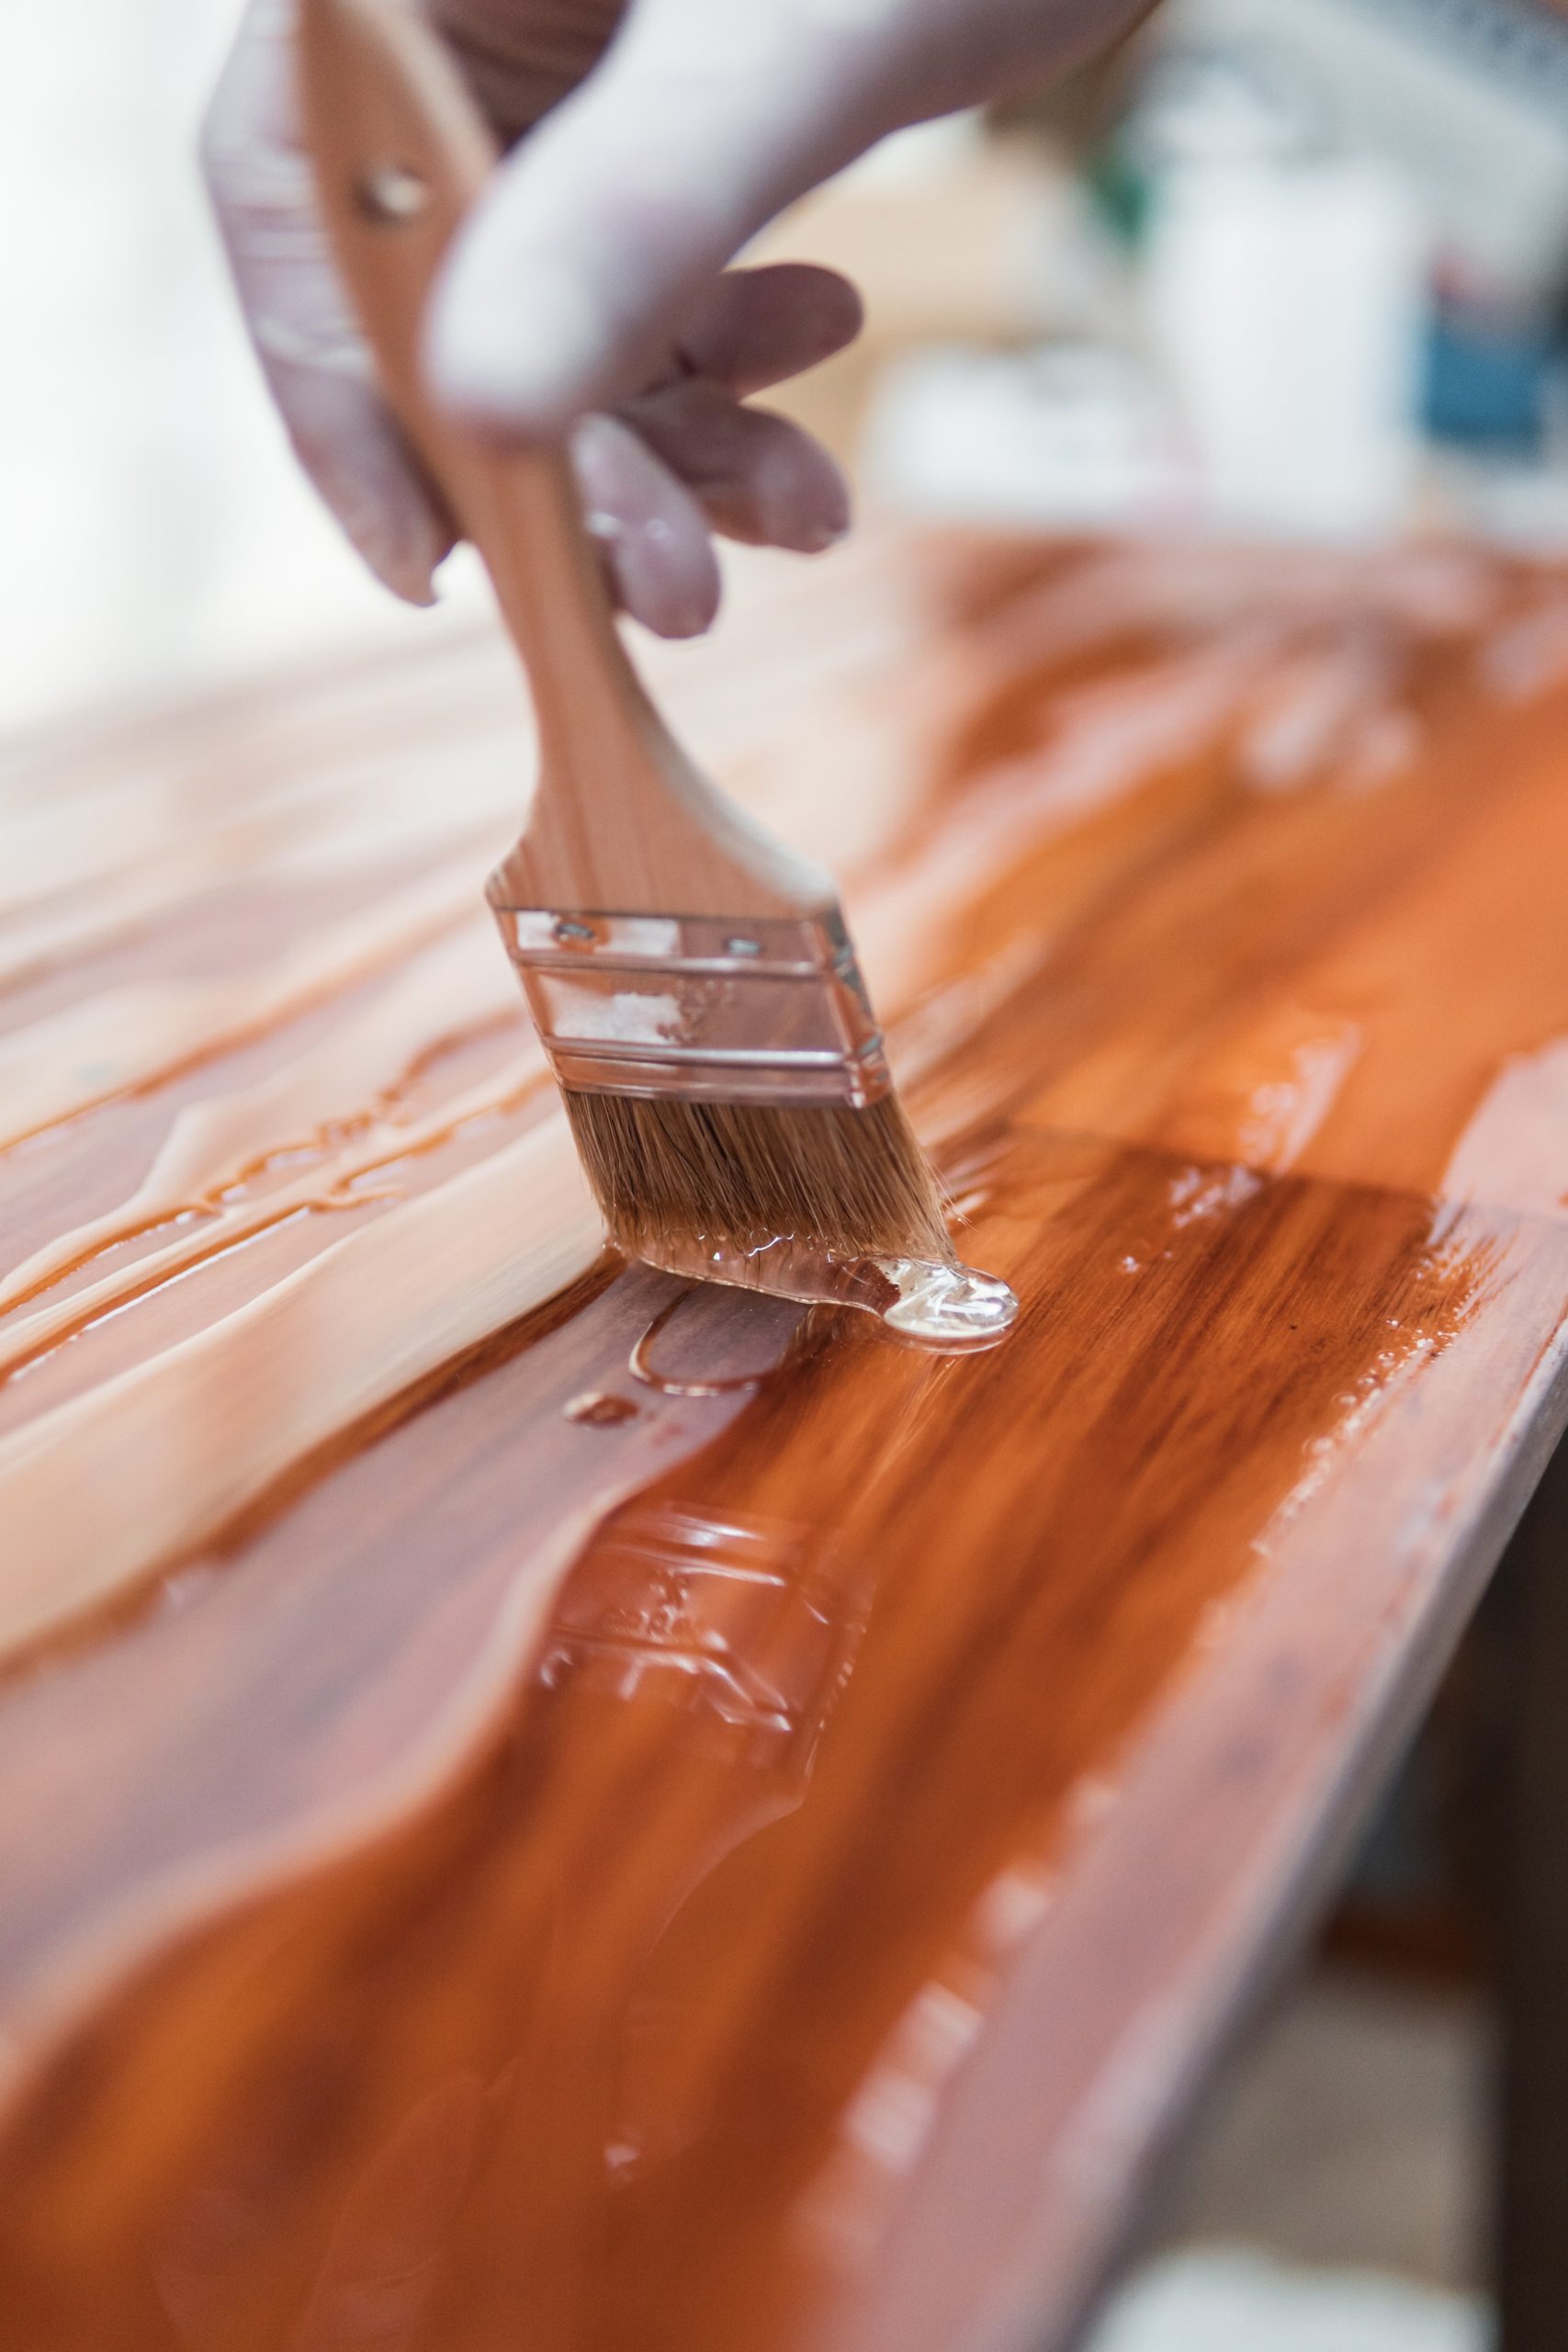 Persona barnizando una mesa de madera